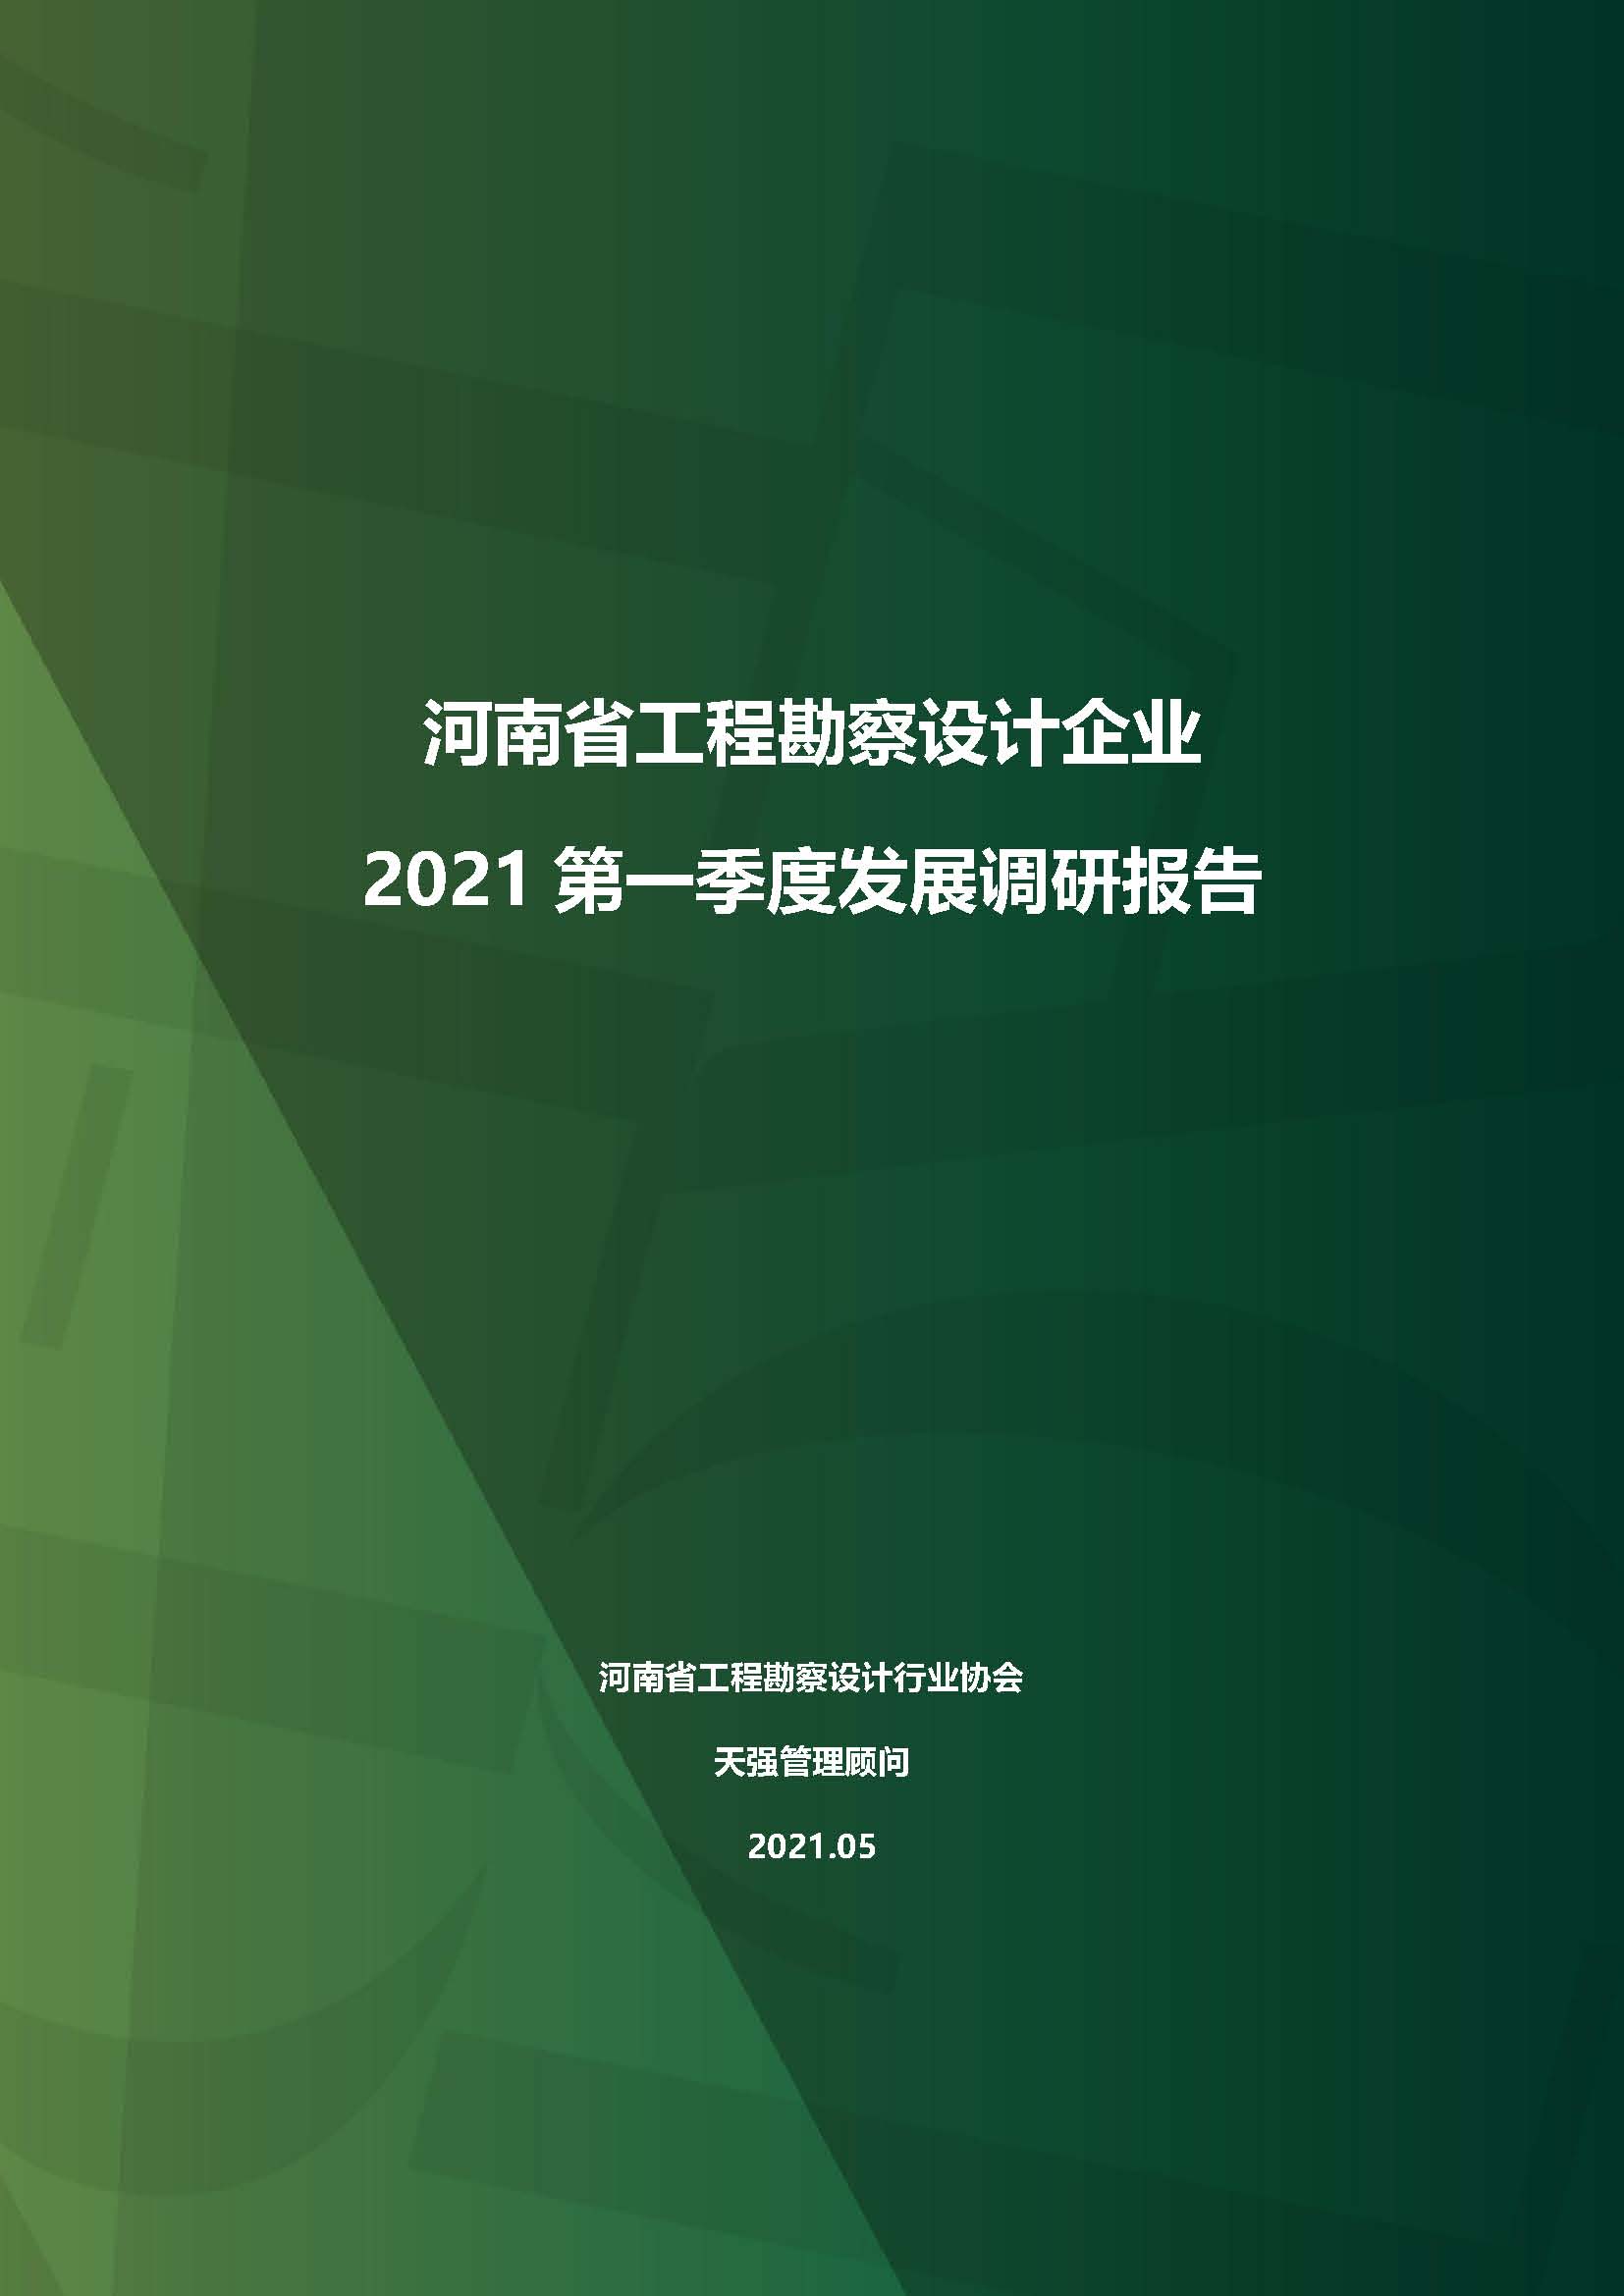 河南省工程勘察设计企业2021第一季度发展调研报告（一）_页面_1.jpg